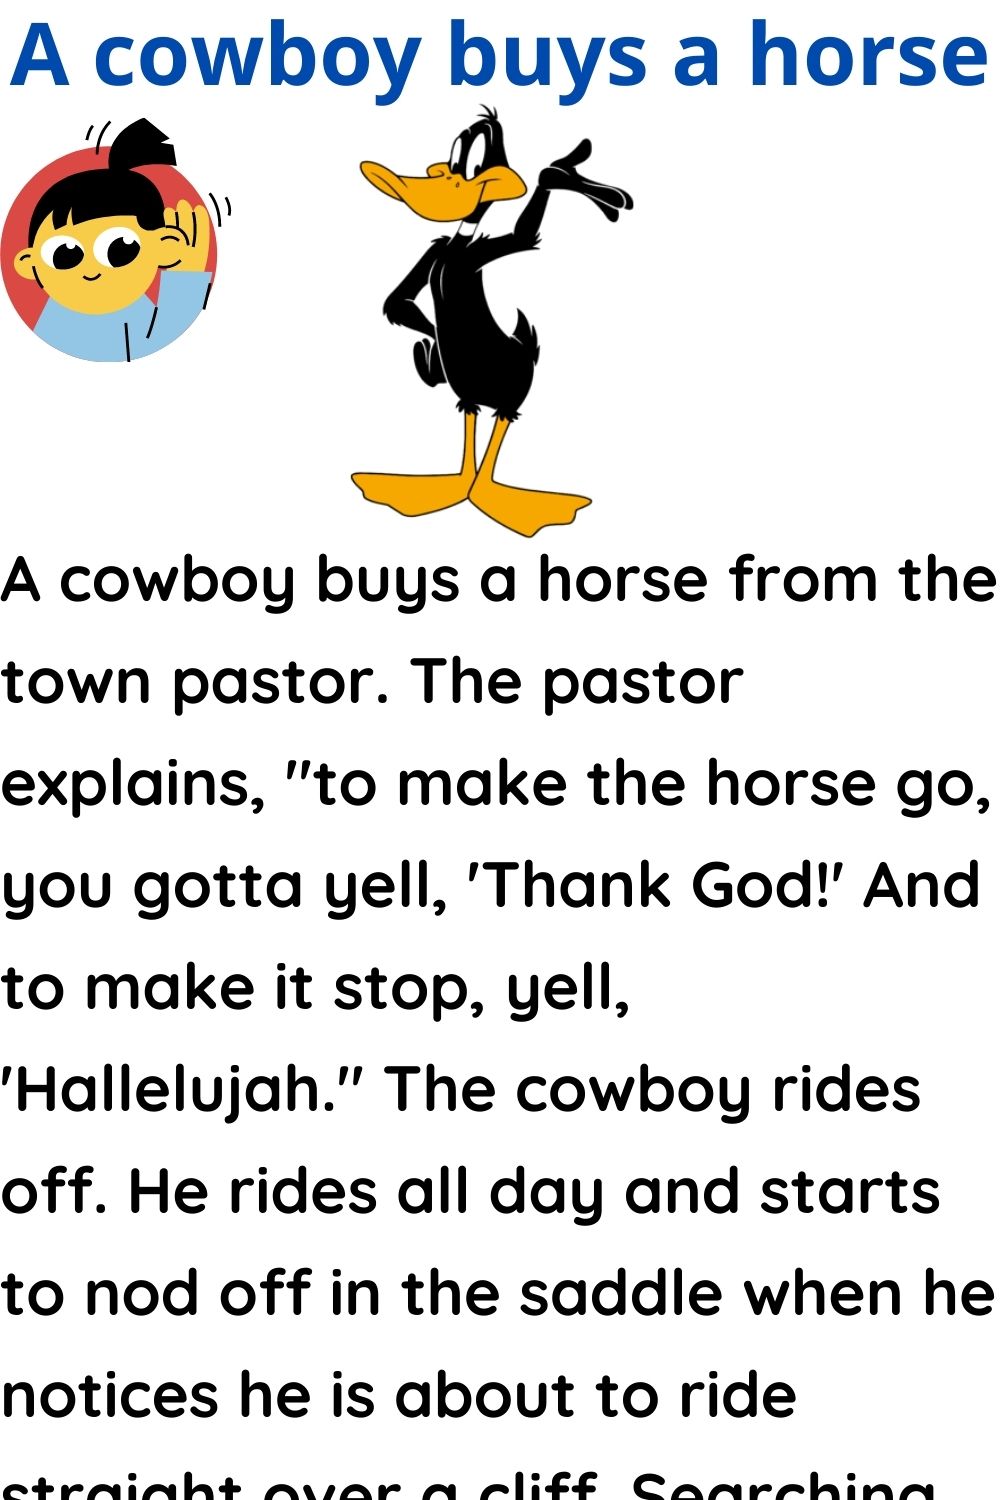 A cowboy buys a horse